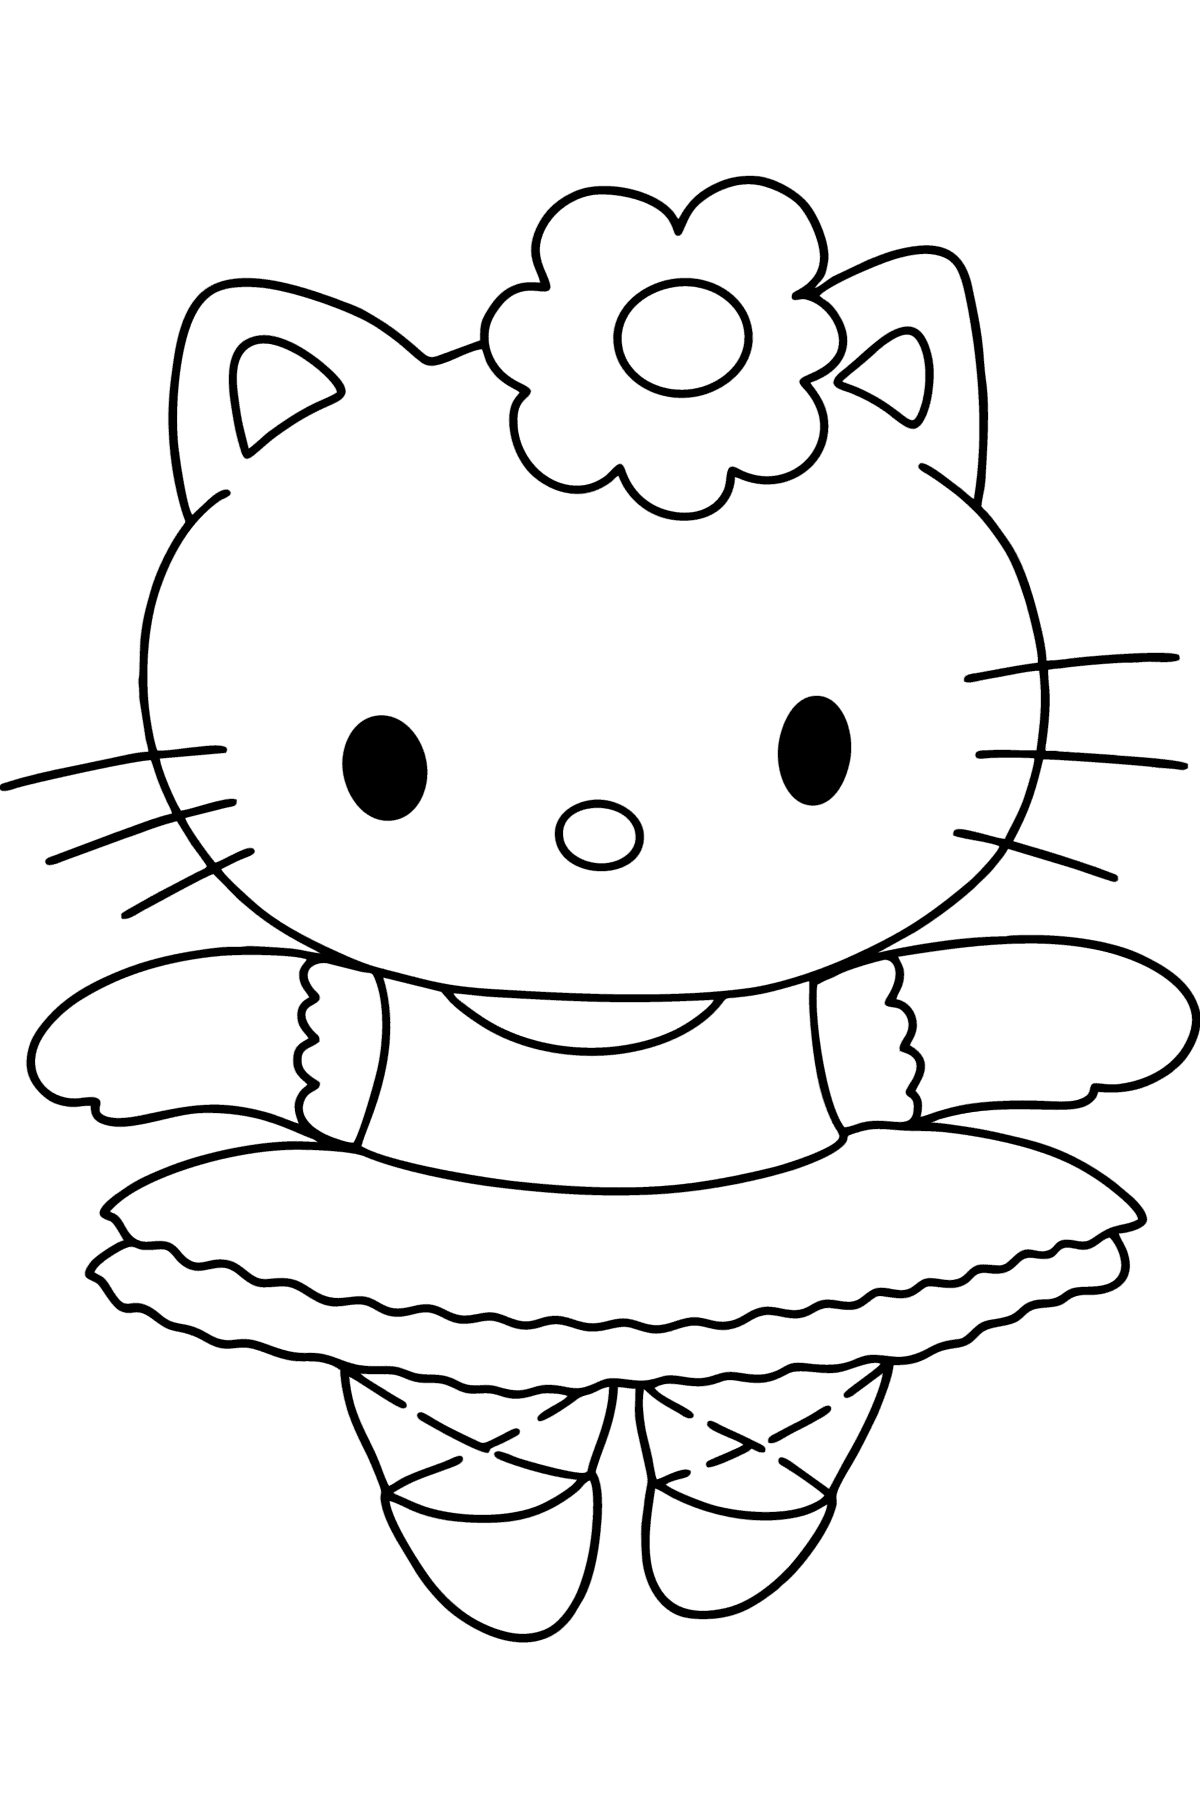 Ausmalbild Hello Kitty Ballerina - Malvorlagen für Kinder